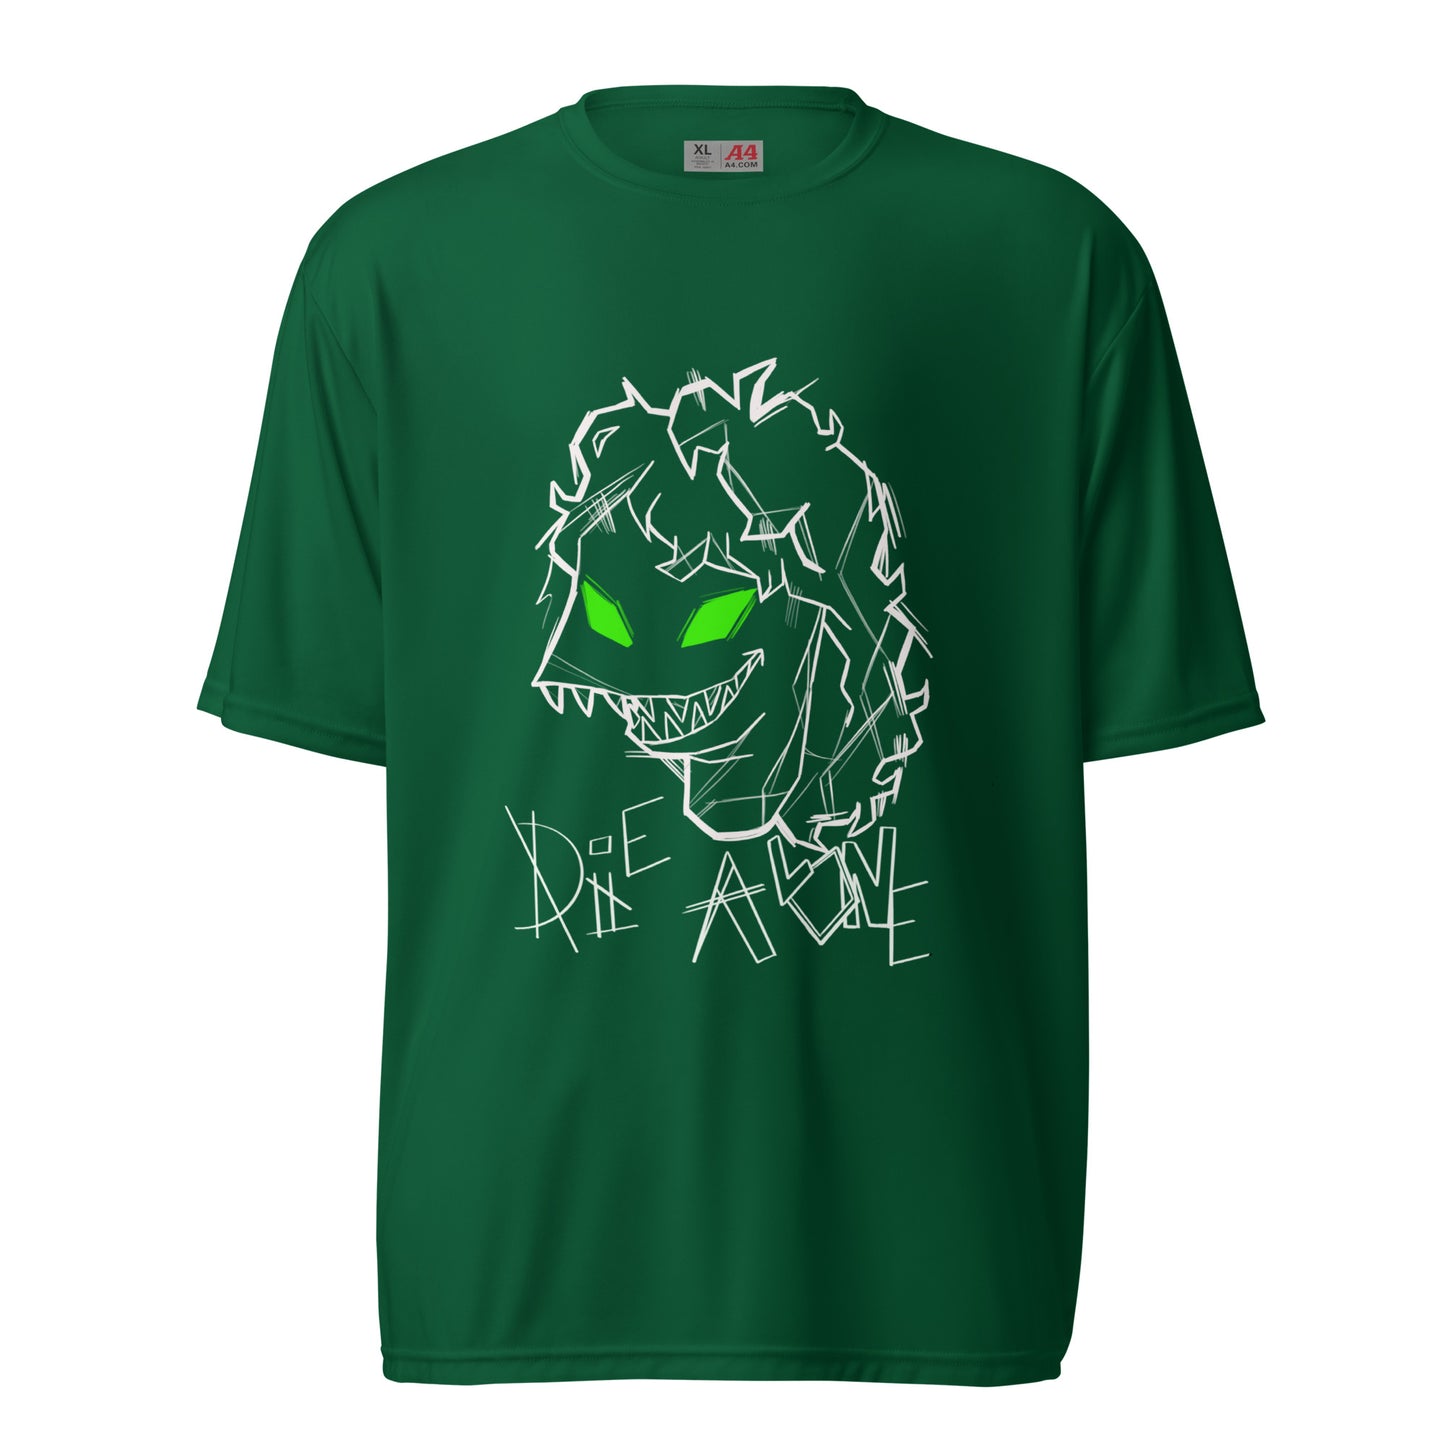 Die Alone T-shirt